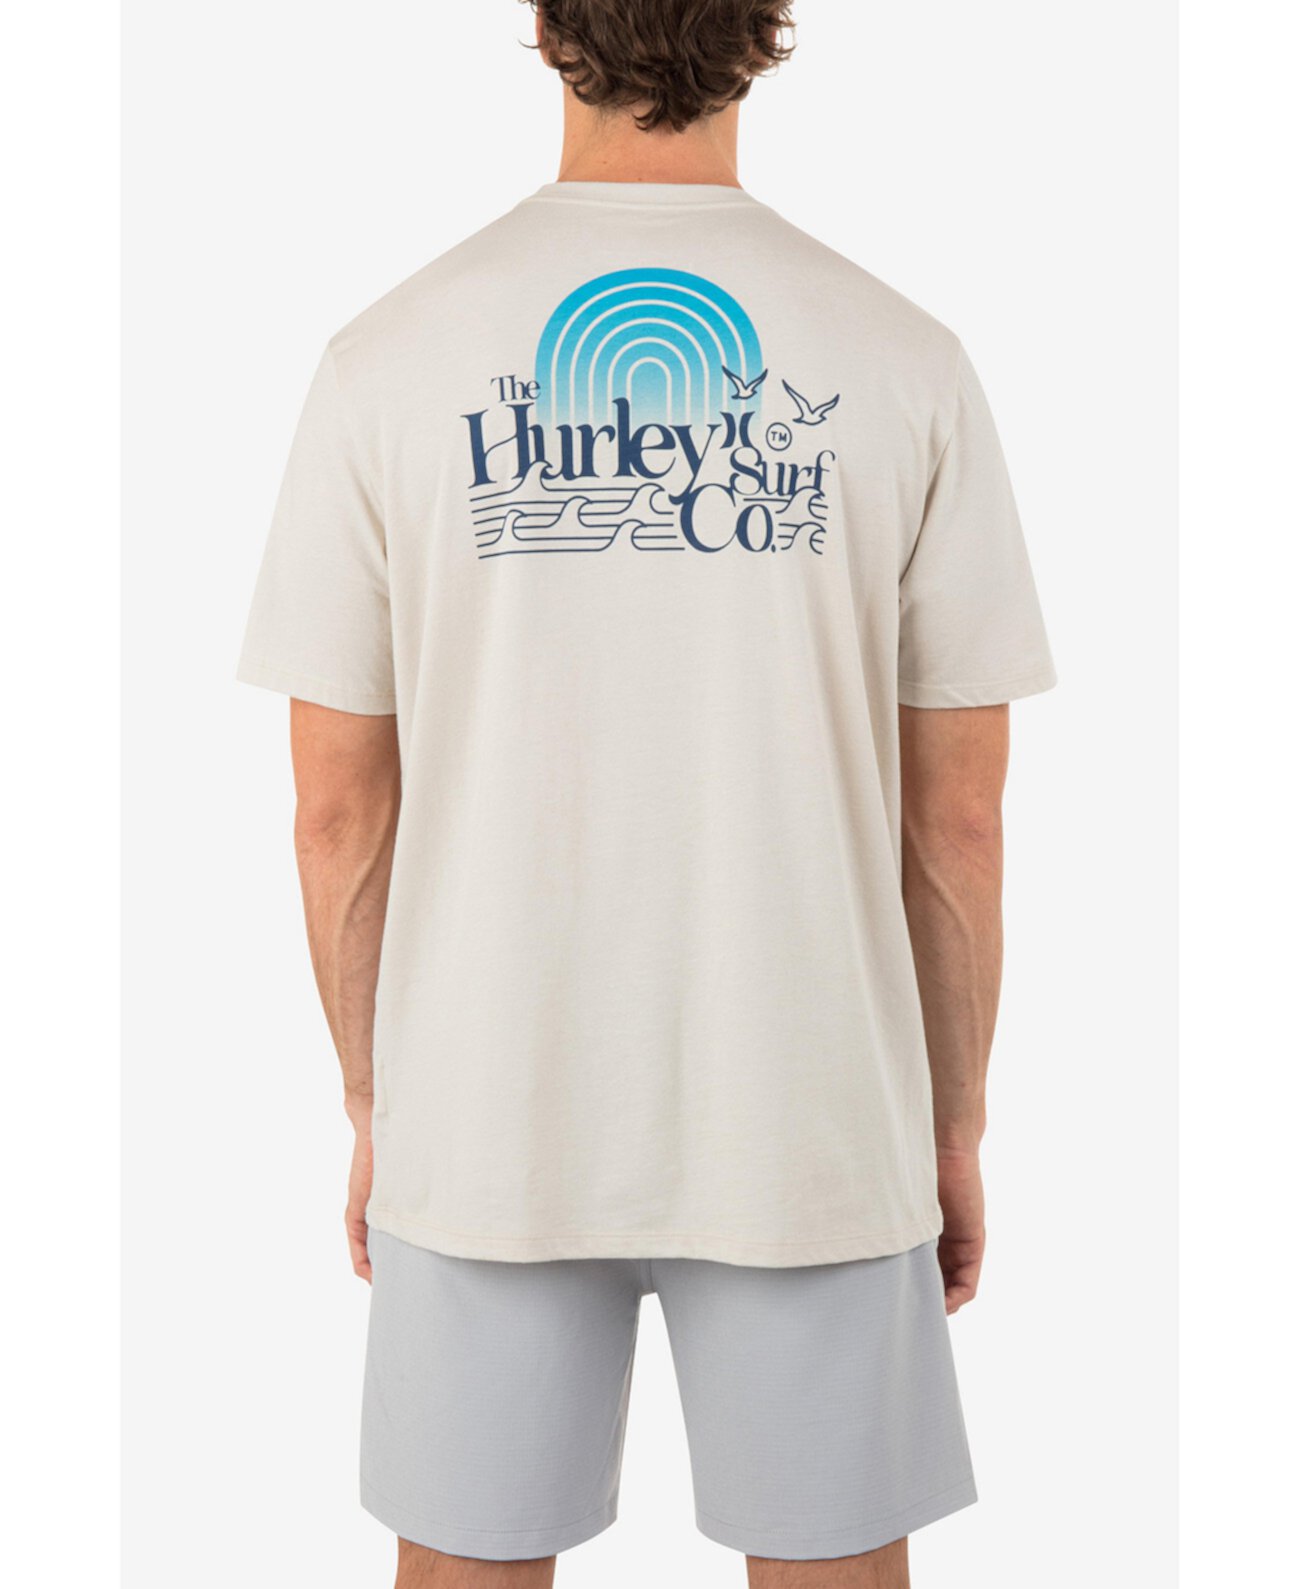 Мужская футболка Windswell с короткими рукавами на каждый день Hurley